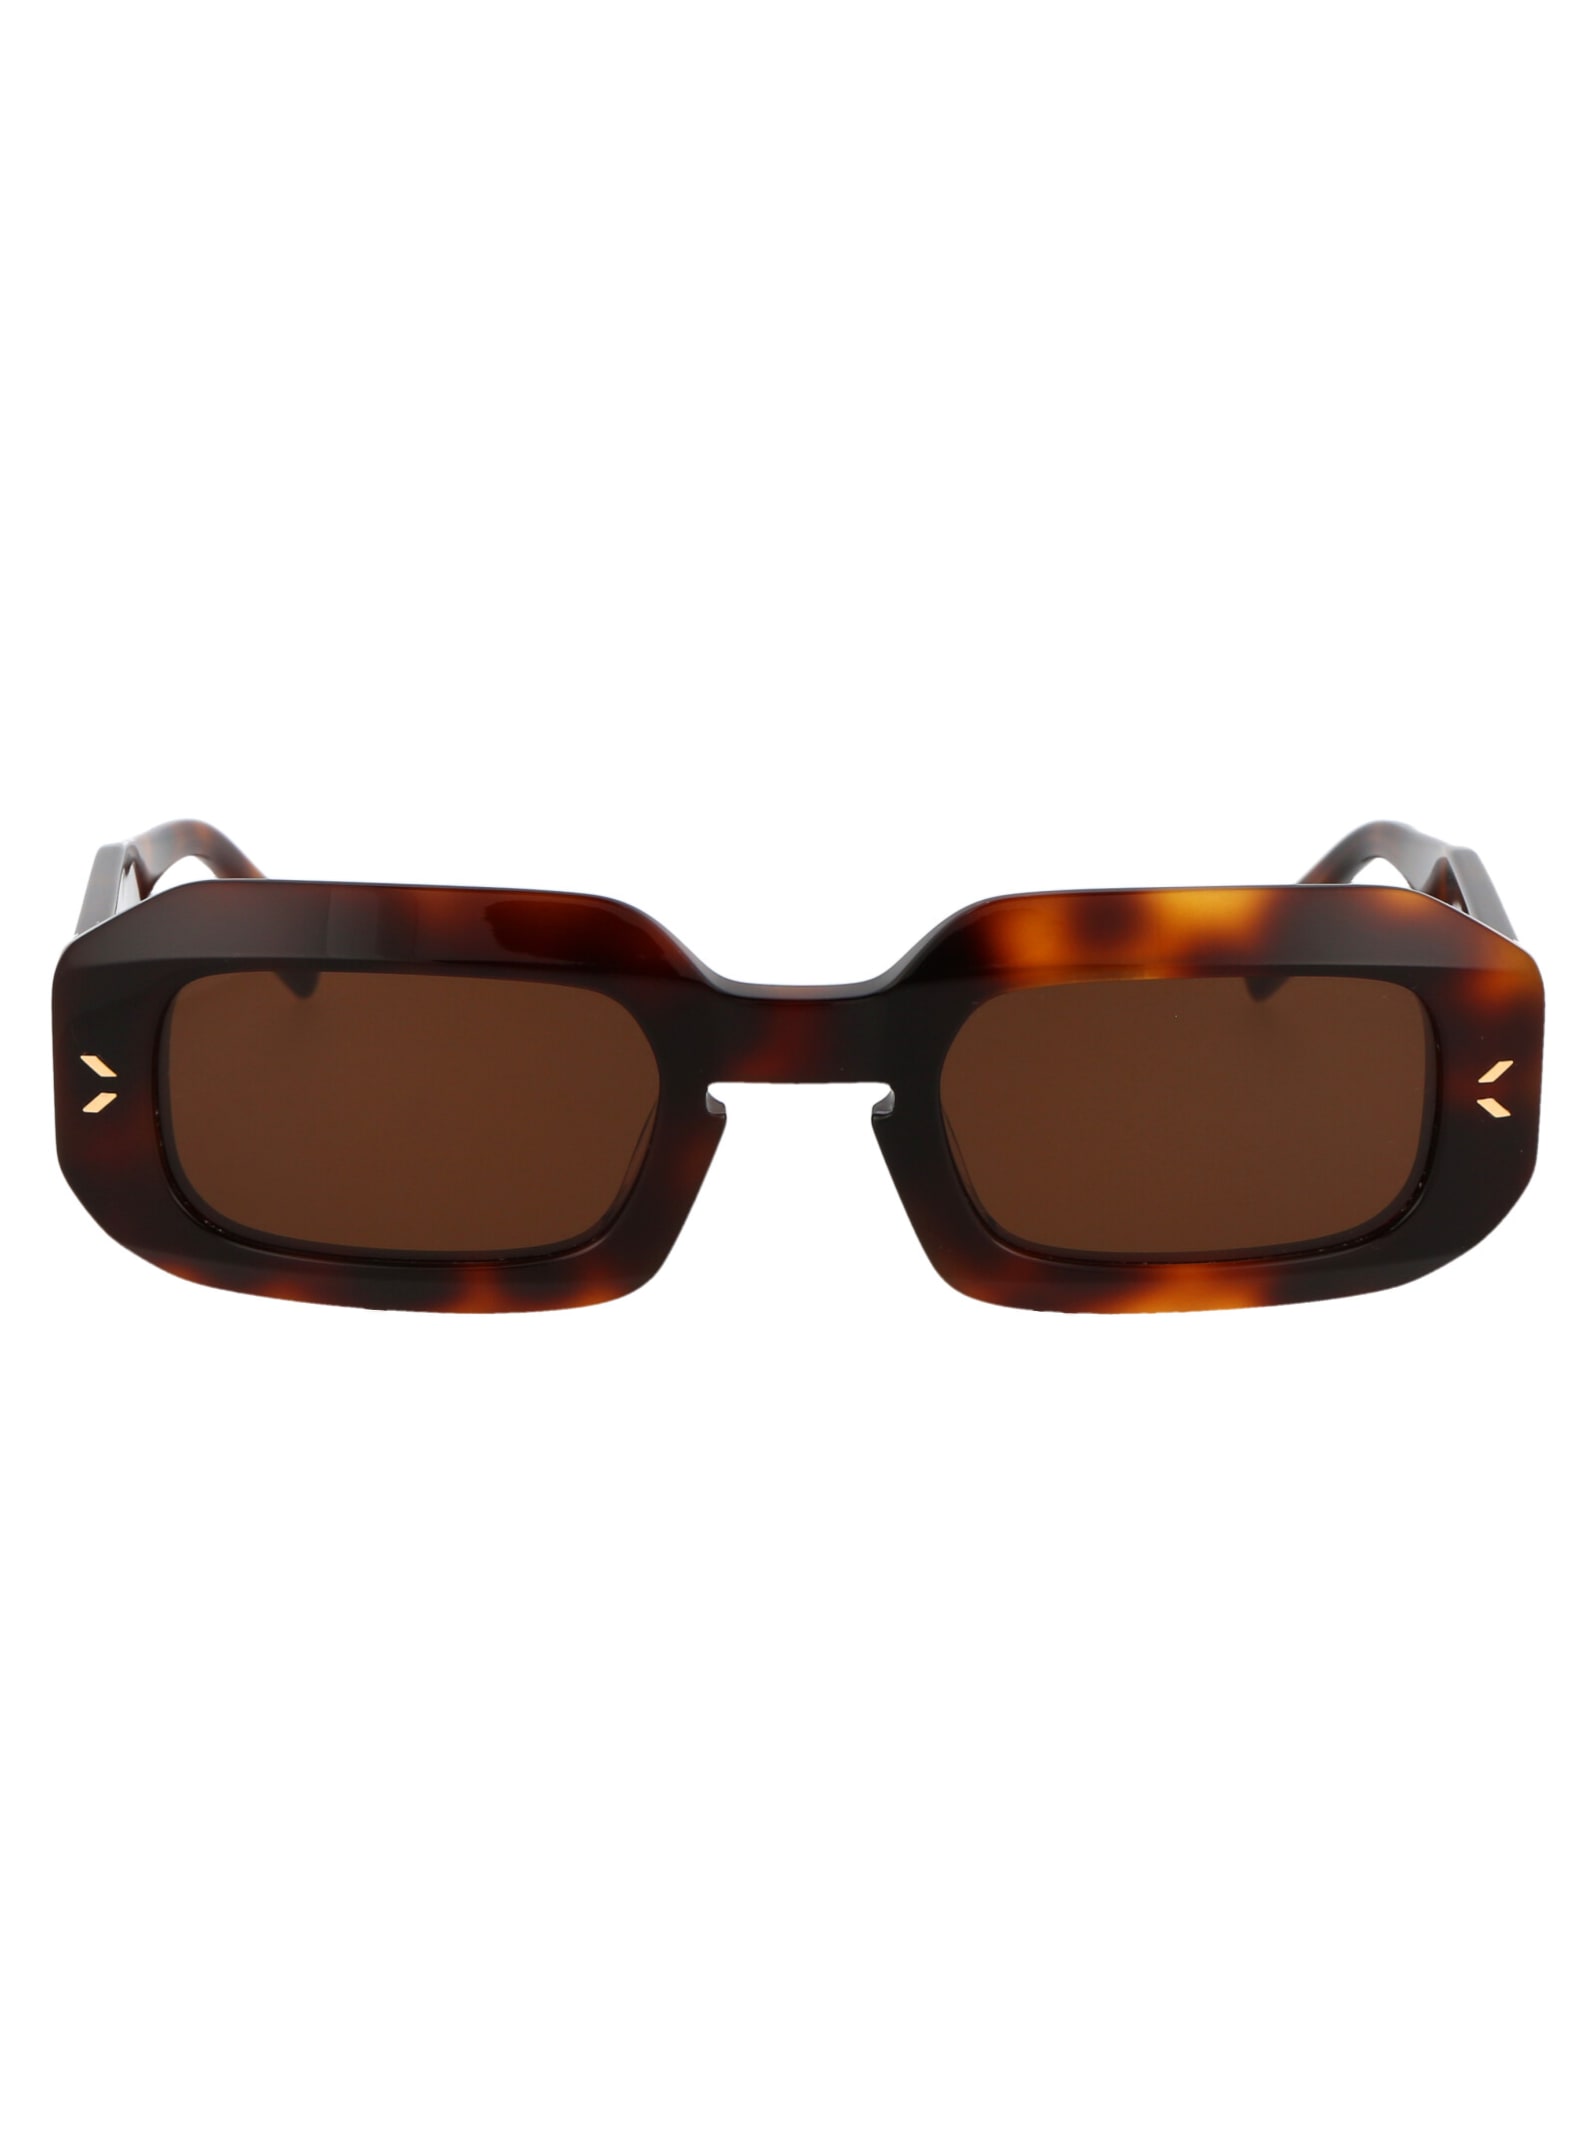 McQ Alexander McQueen Mq0361s Sunglasses